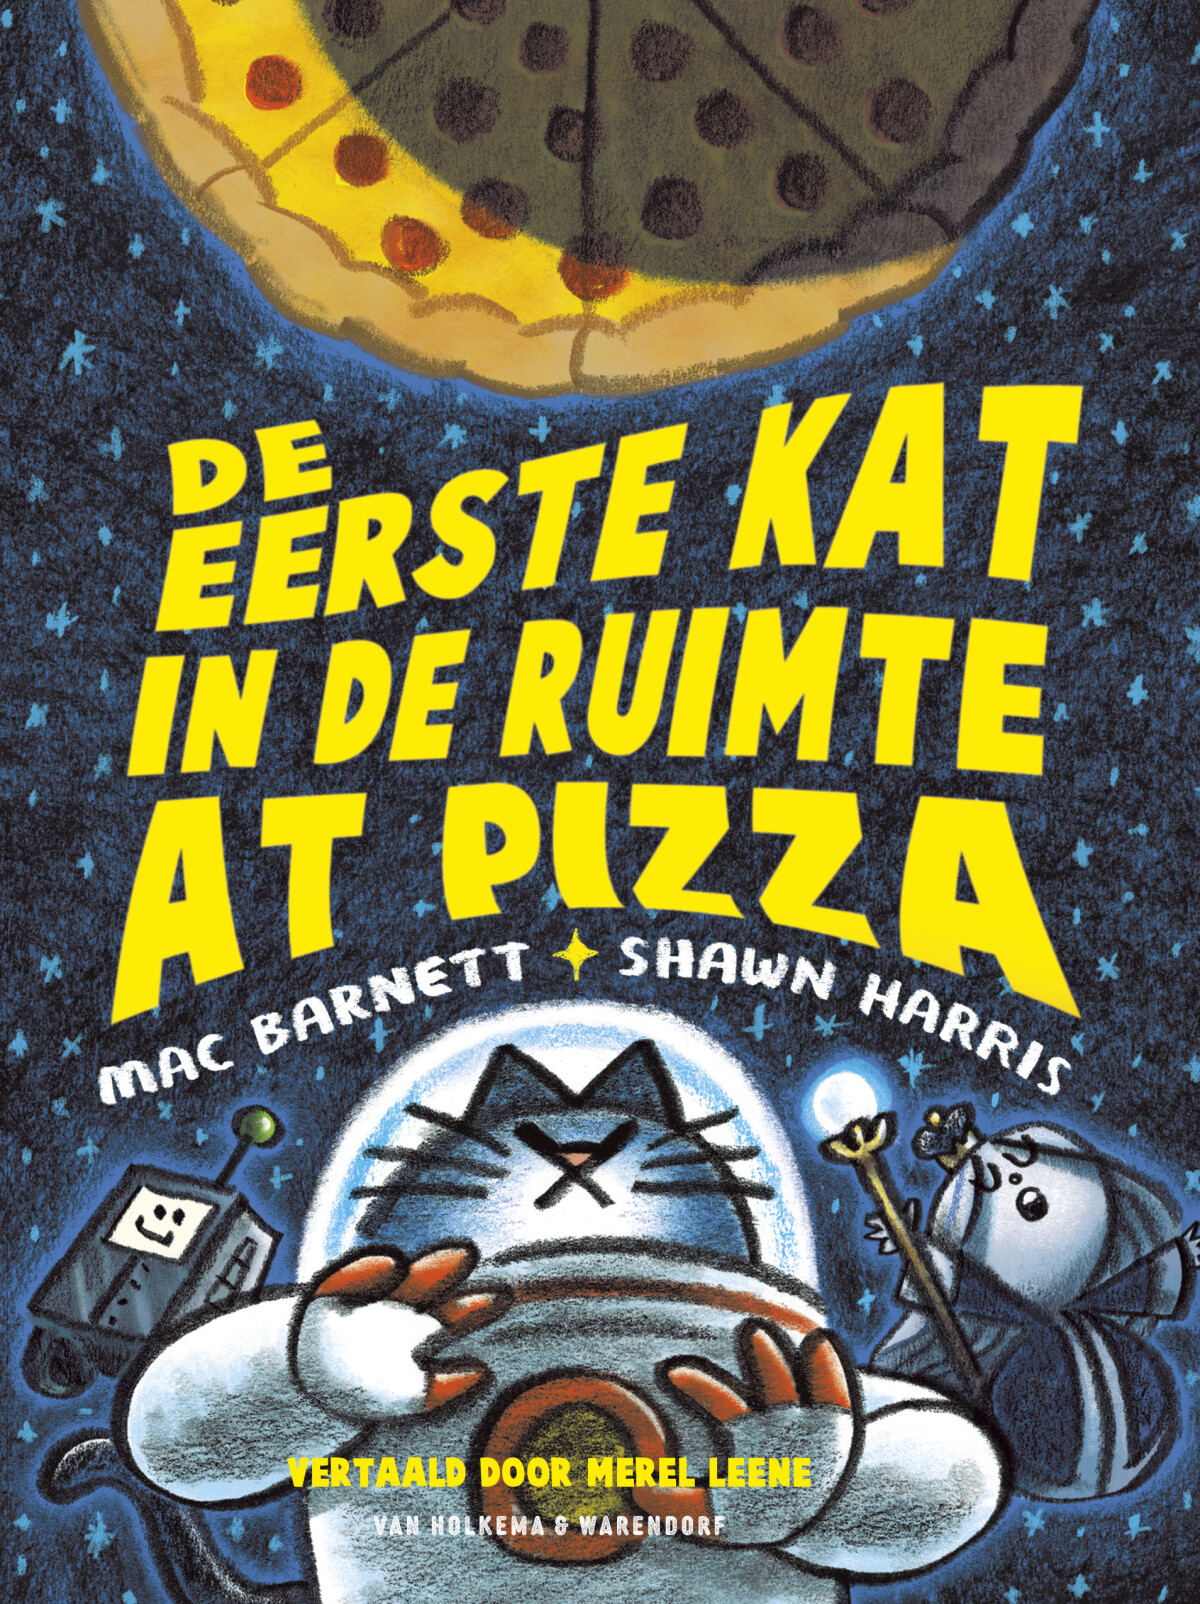 De eerste kat in de ruimte at pizza